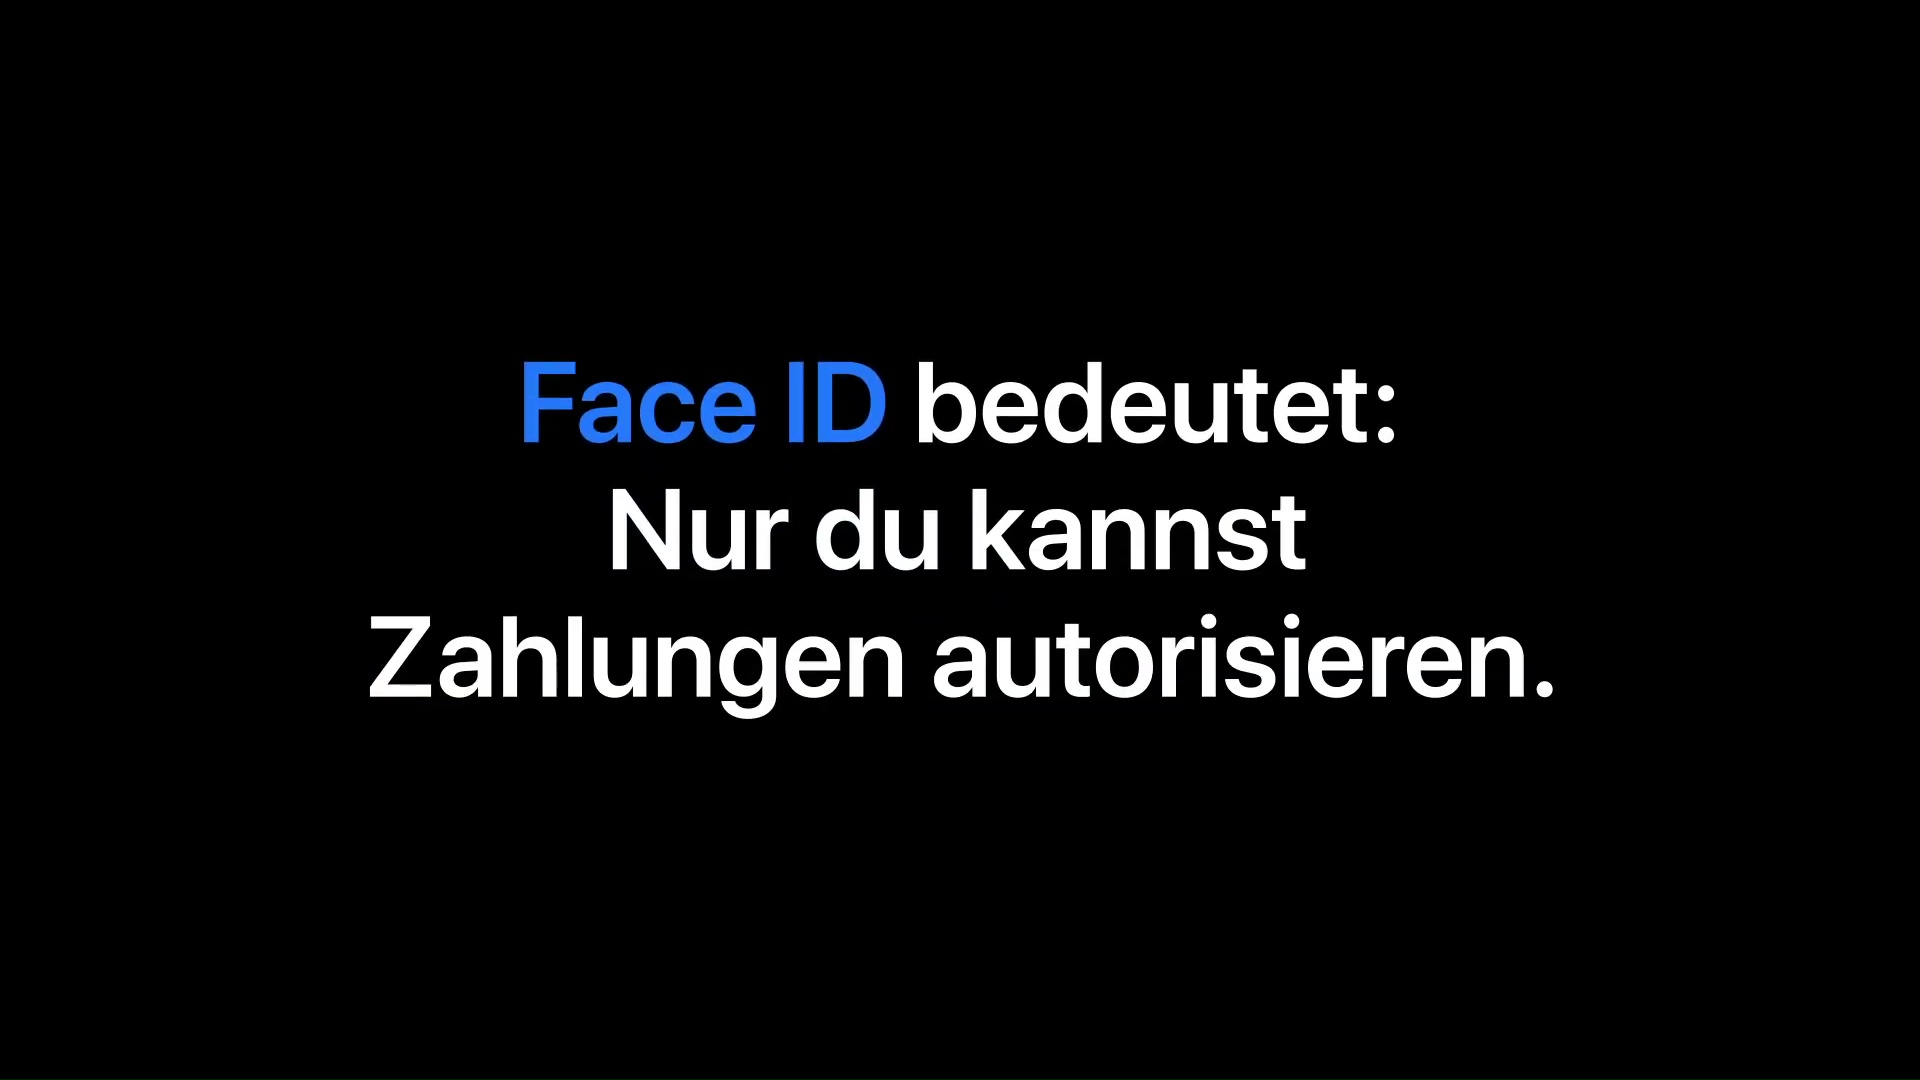 Zahlungen autorisieren mit Face ID